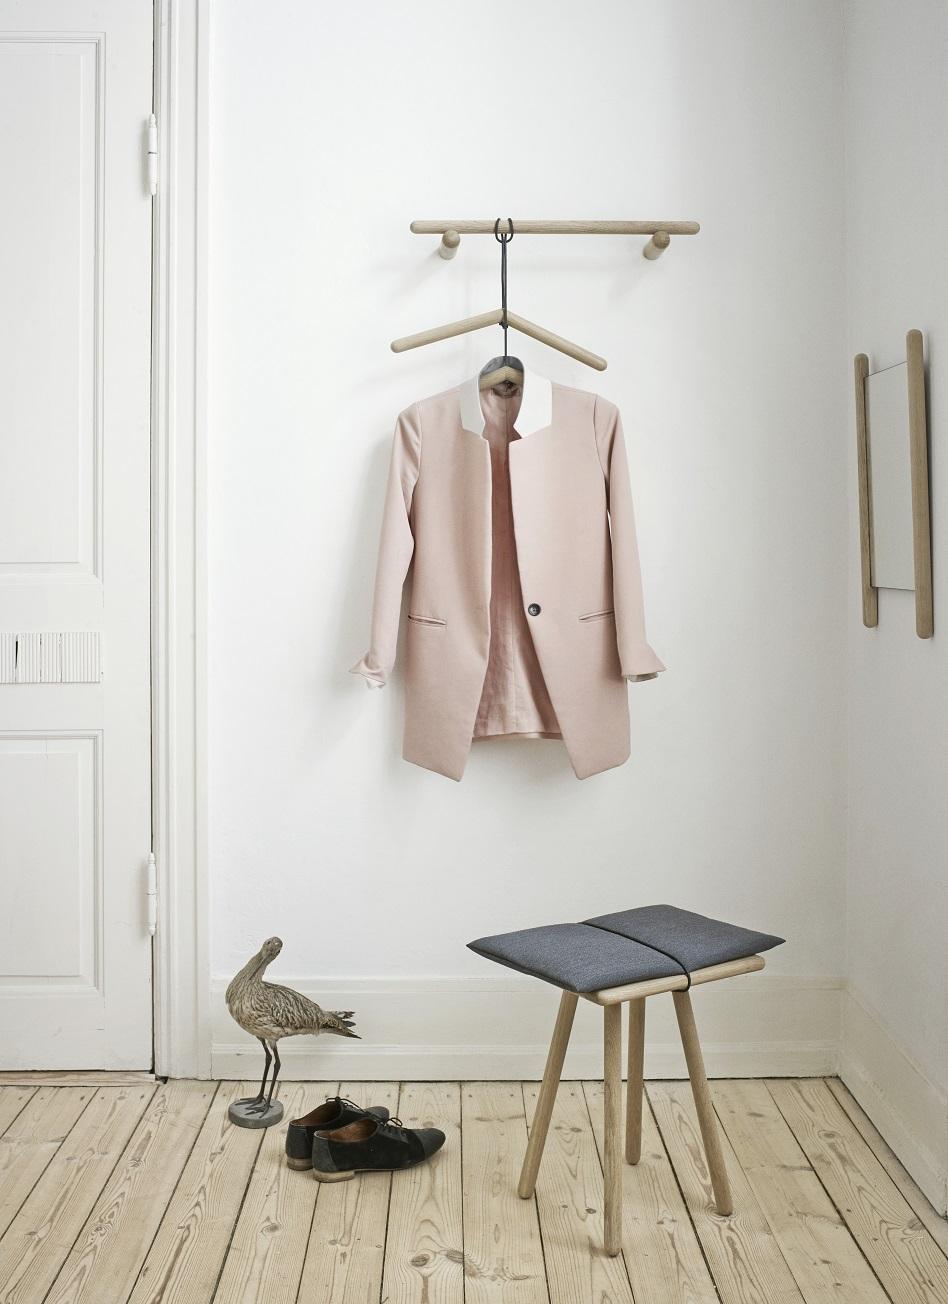 Garderobenleiste GEORG RACK von Skagerak #kleiderständer #garderobe #skandinavischesdesign ©Skagerak